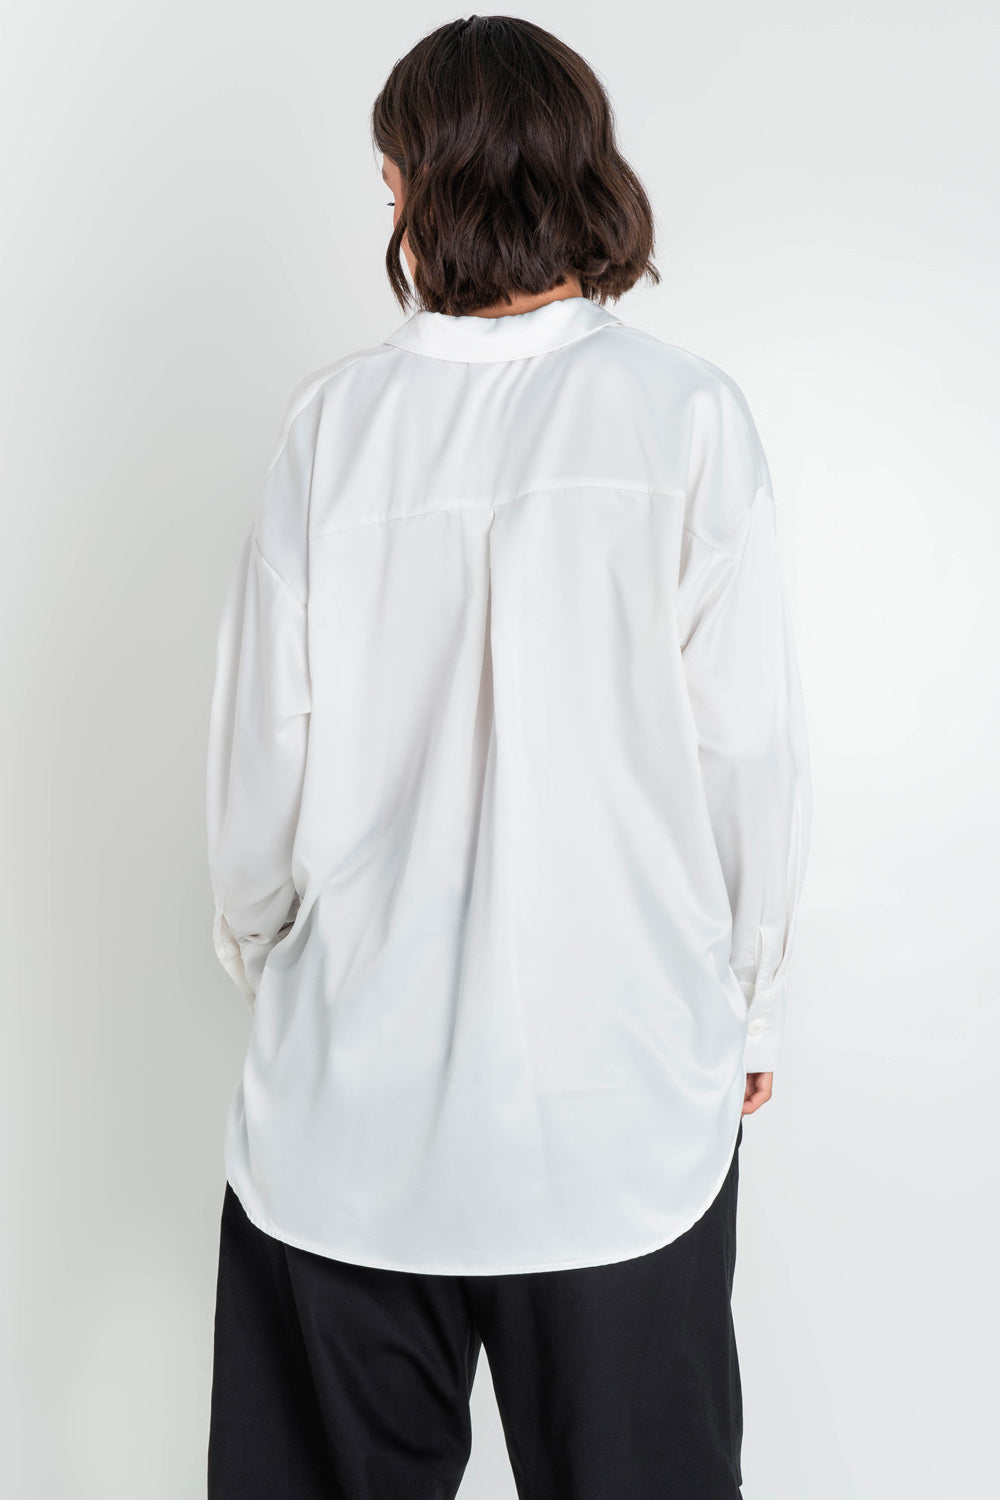 Camisa satinada de fit oversized, manga larga con puño abotonado, cuello camisero, bajo curveado, pinza de amplitud en espalda y cierre frontal con hilera de botones.